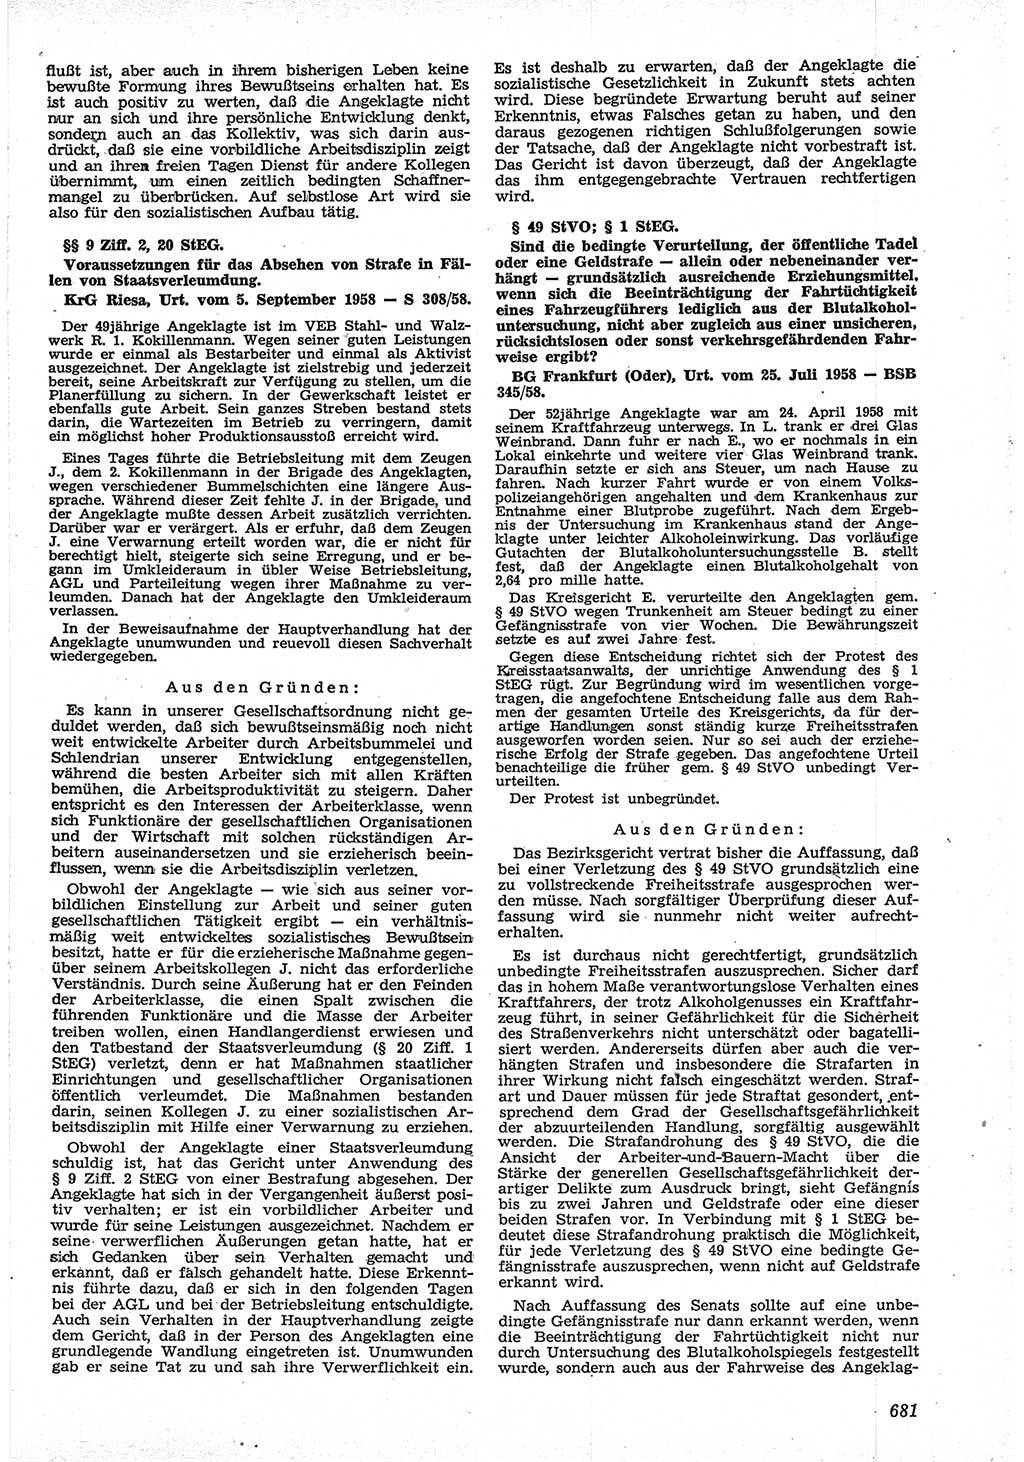 Neue Justiz (NJ), Zeitschrift für Recht und Rechtswissenschaft [Deutsche Demokratische Republik (DDR)], 12. Jahrgang 1958, Seite 681 (NJ DDR 1958, S. 681)